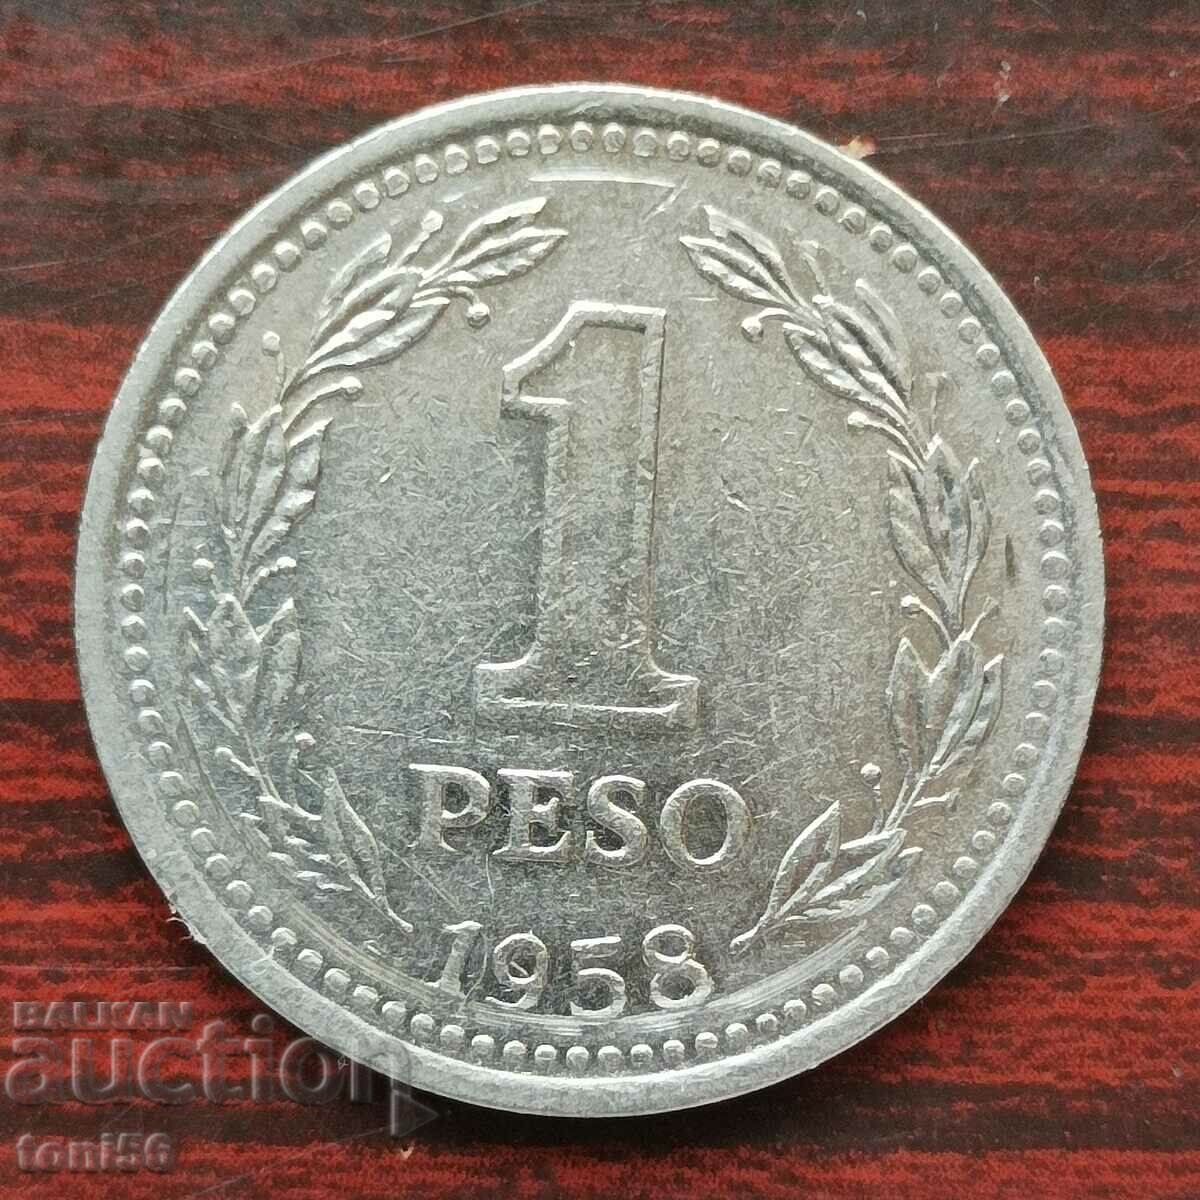 Argentina 1 peso 1958